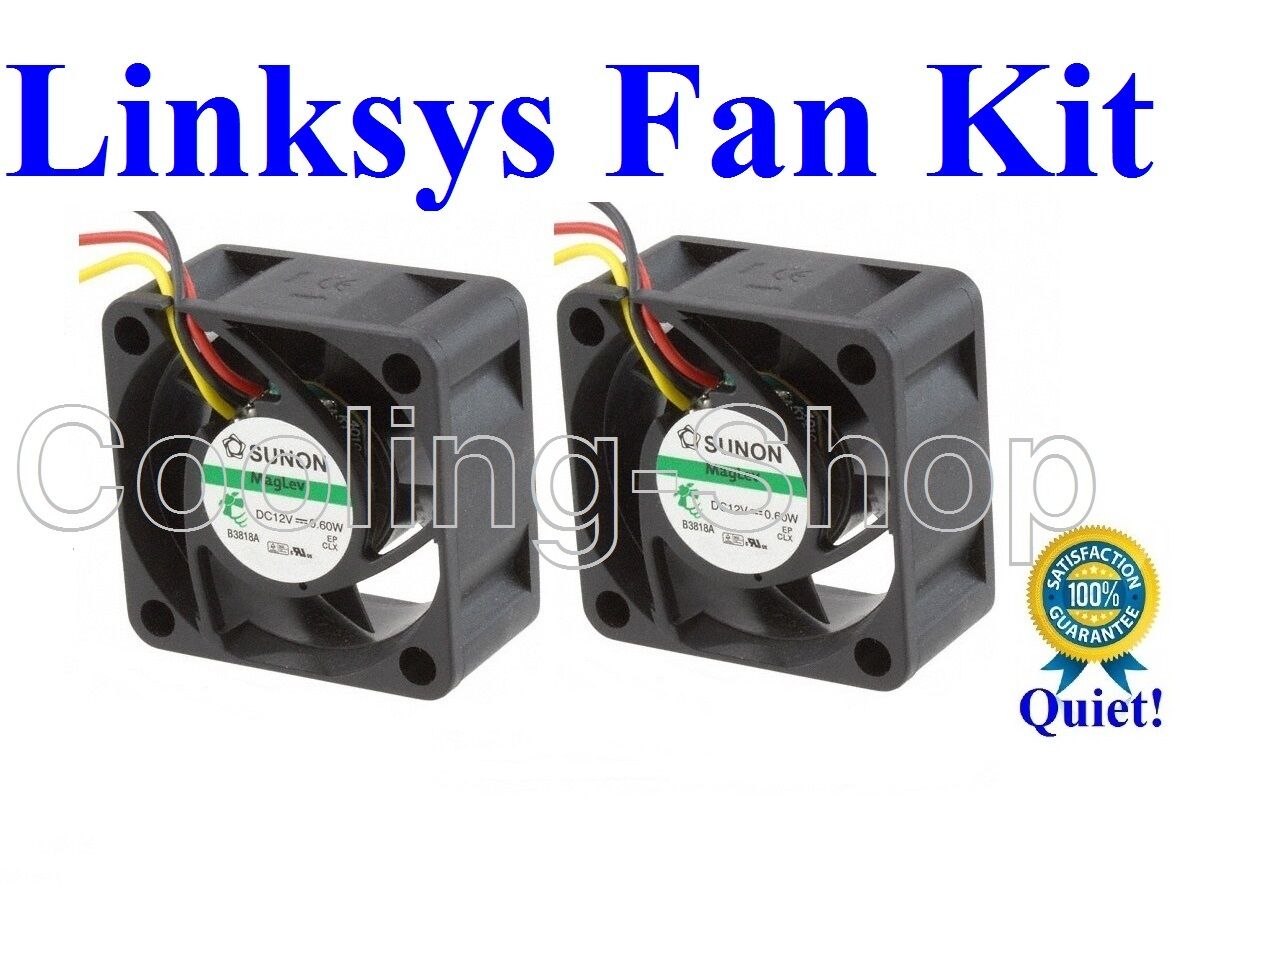 Cisco Linksys SGE2010 FAN KIT, 2x New Sunon or Delta Fans